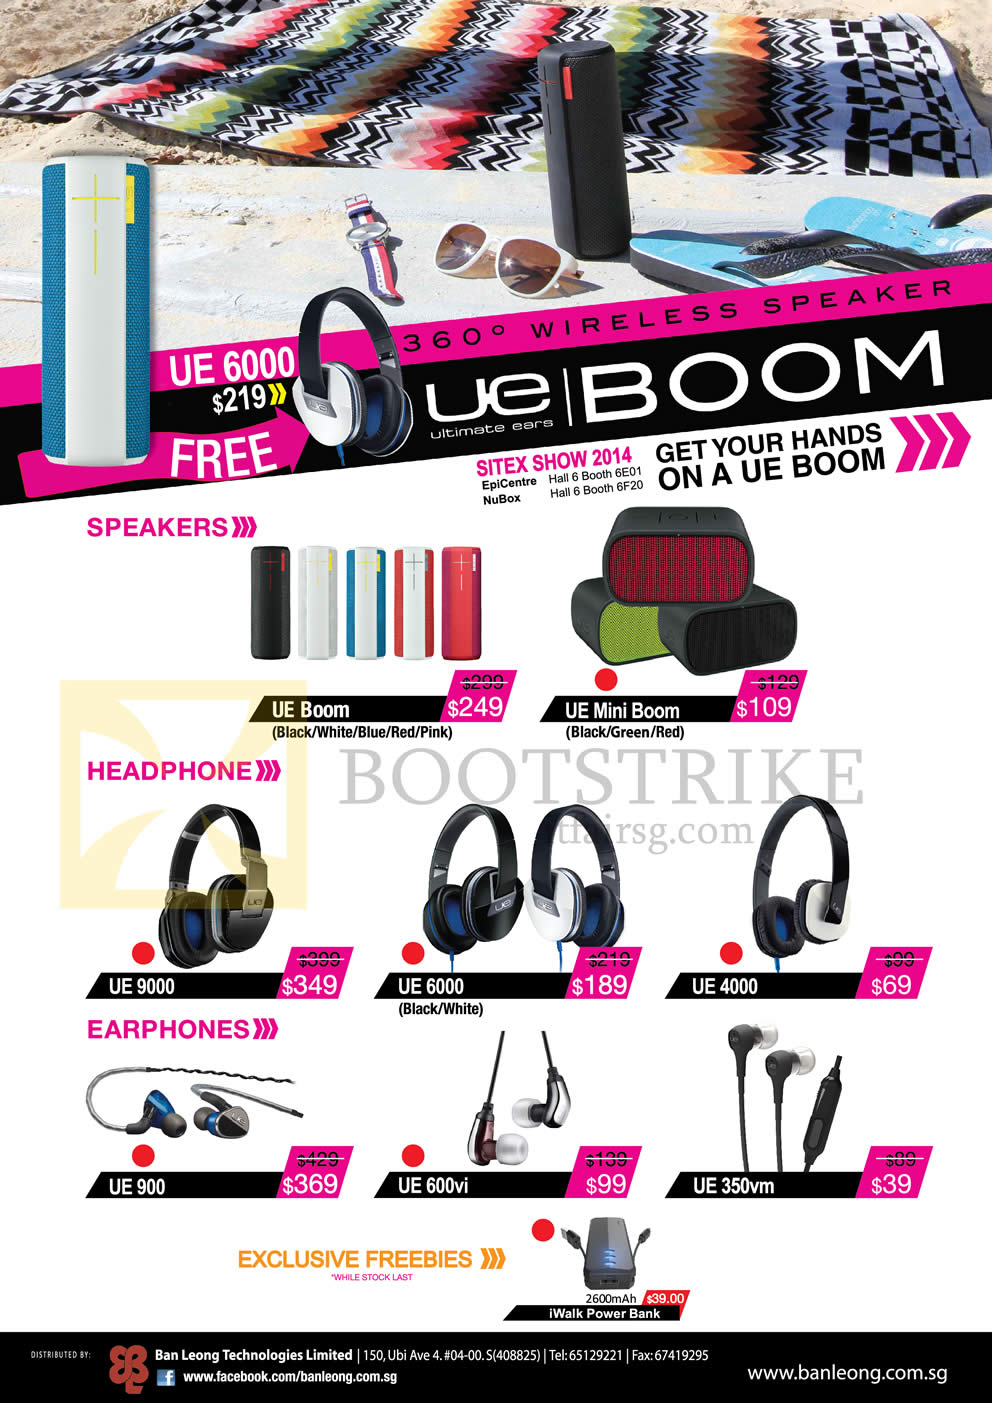 SITEX 2014 price list image brochure of Logitech UE Ultimate Ears Headphones, Earphones, Speakers, UE Boom, UE Mini Boom, UE9000, UE6000, UE4000, UE900, UE600vi, UE350vm, IWalk Power Bank